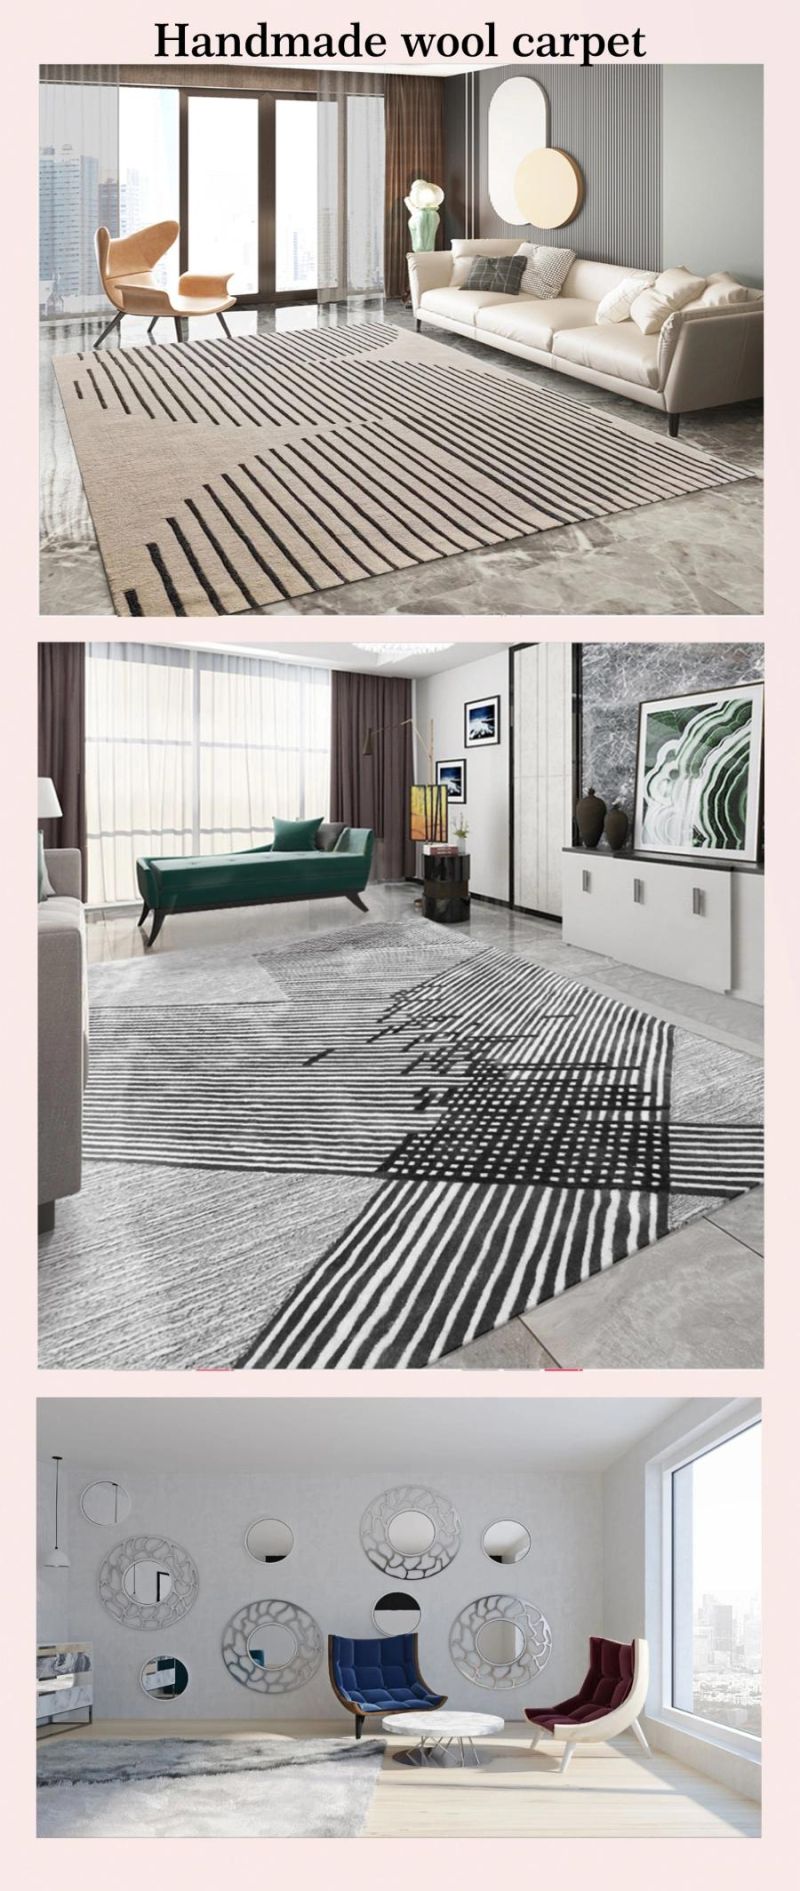 American Wool Carpet Living Room Sofa Coffee Table Blanket Carpet